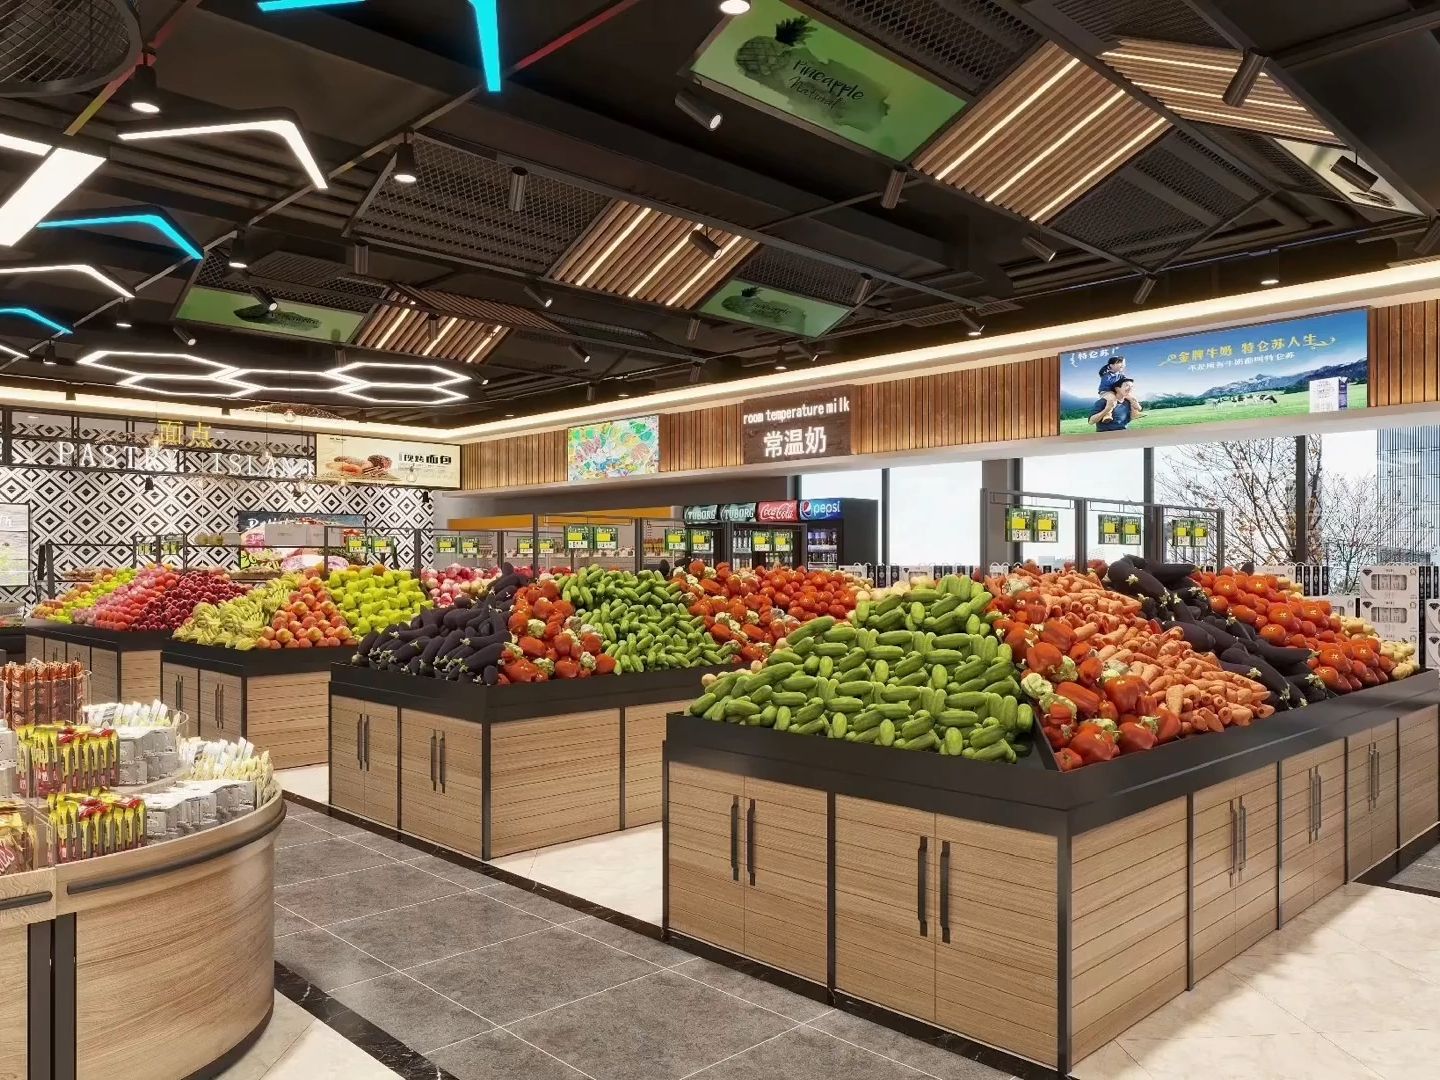 超市空间设计效果图!整个超市的外观设计简约大方,让人感觉清新自然